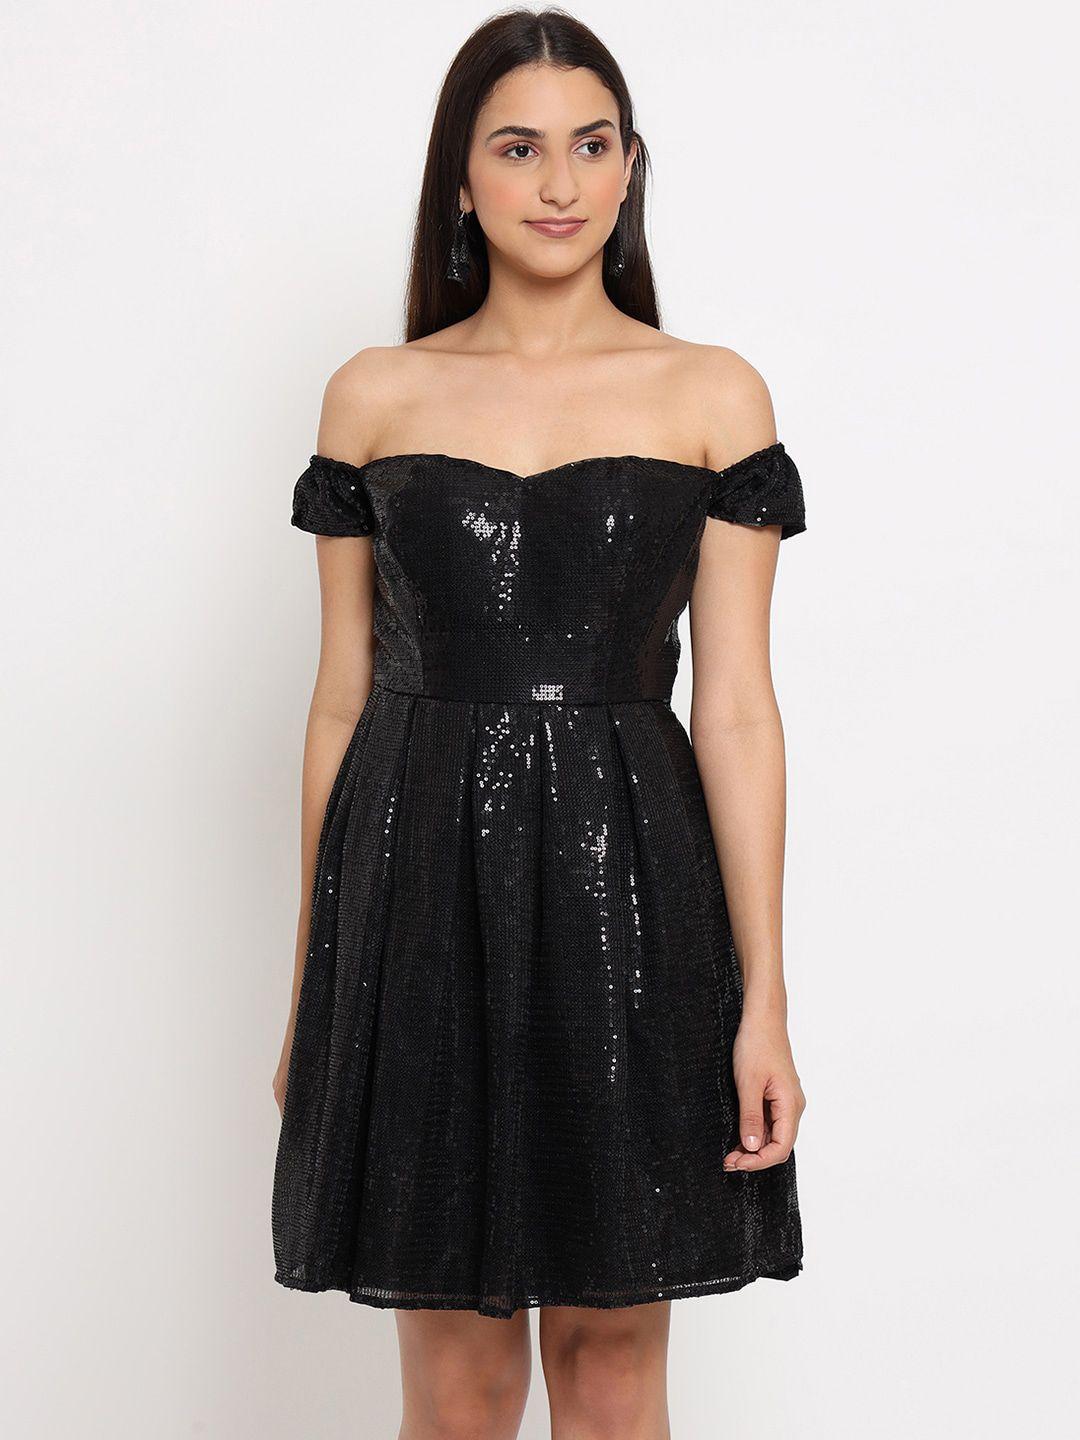 marc louis black sequined off-shoulder georgette dress